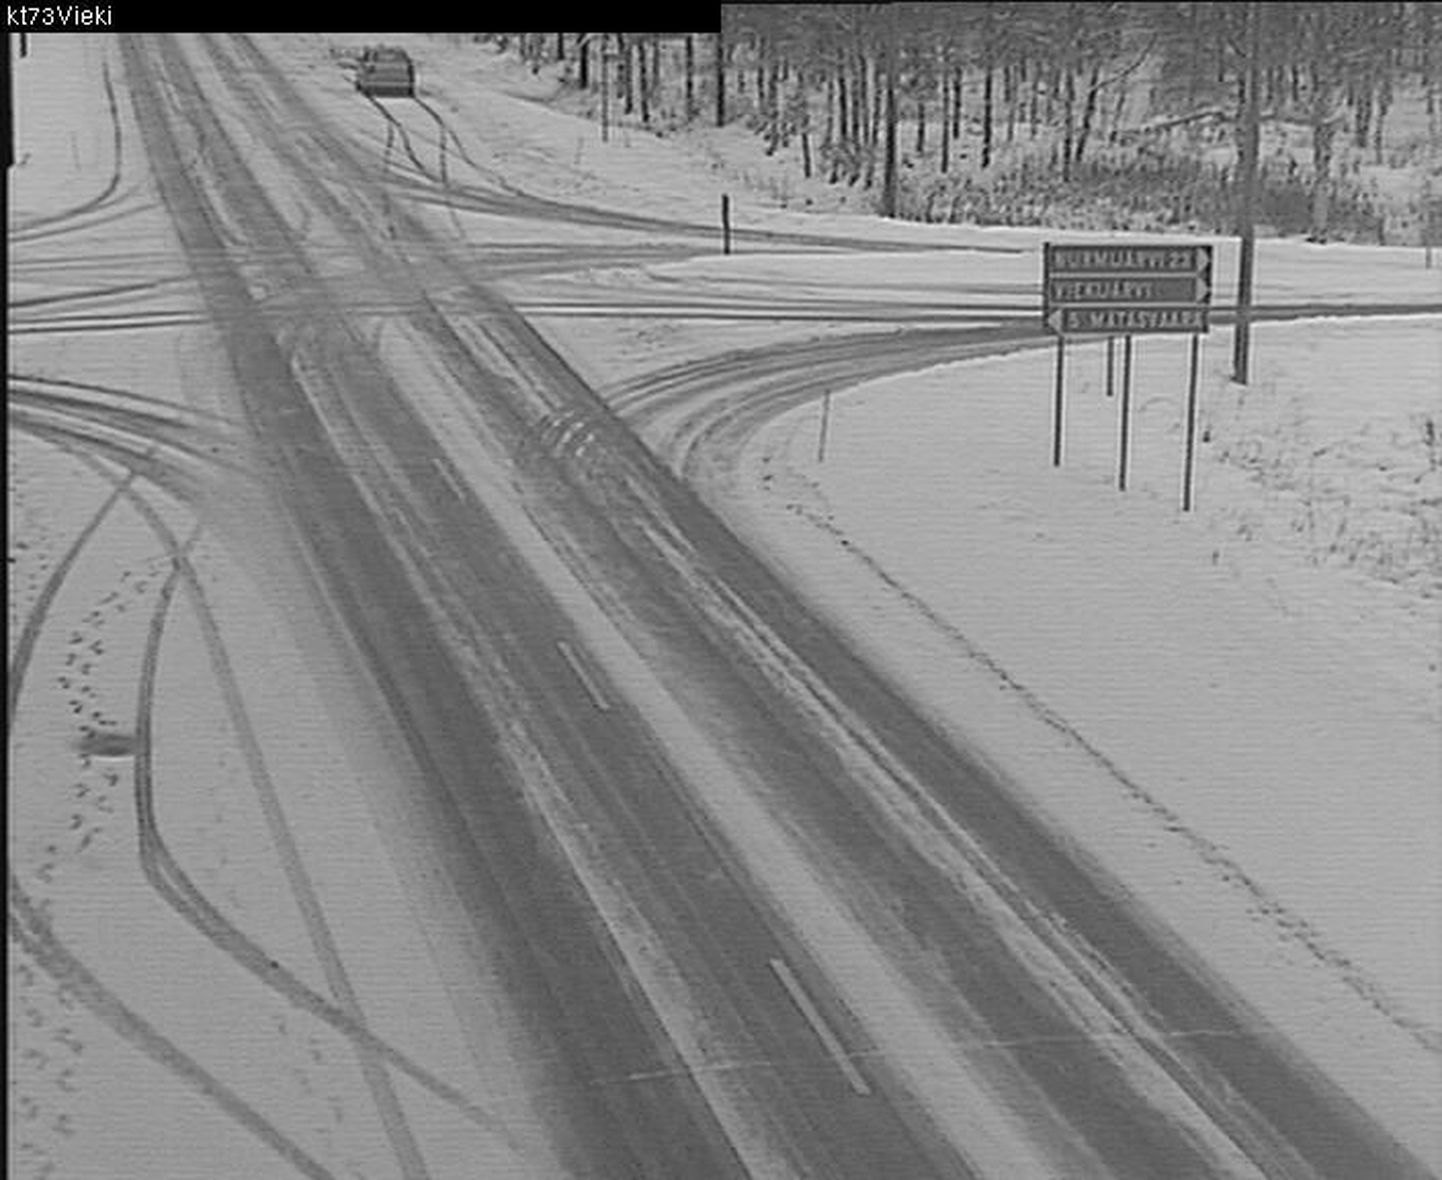 Põhja-Karjala lumine loodus. Pilt on tehtud täna maanteekaamerast kell 11.03 Juukal.